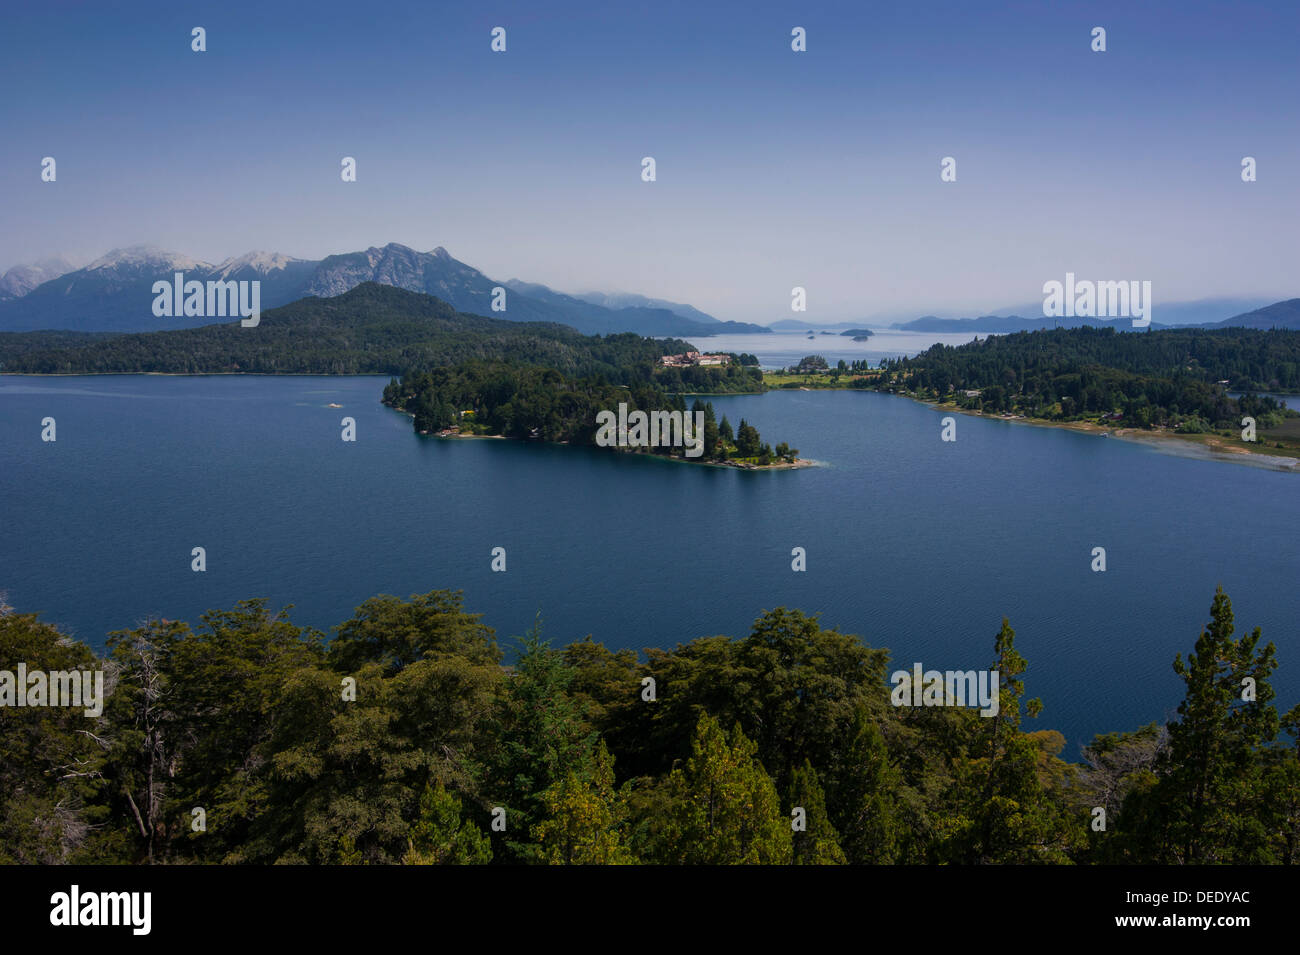 Hotel Llao Llao in the Nahuel Huapi lake near Bariloche, Argentina, South America Stock Photo